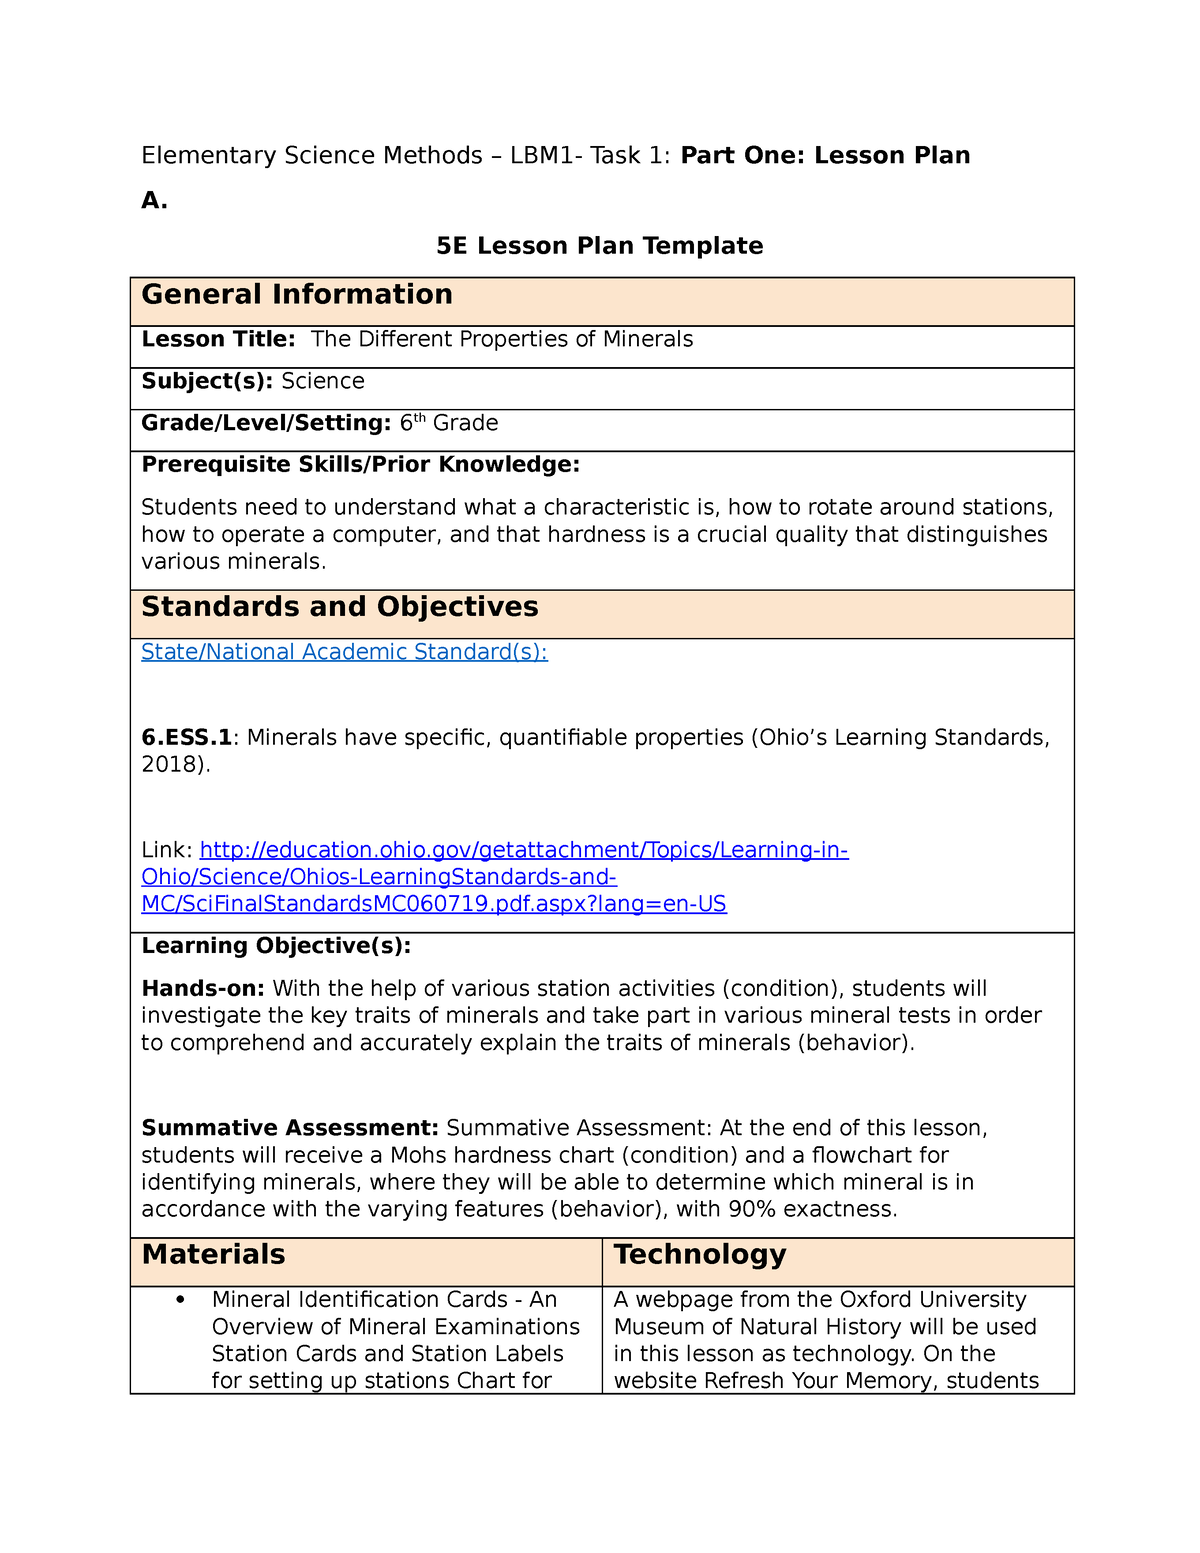 WGU 5E Lesson Plan Template Elementary Science Methods LBM1 Task 1